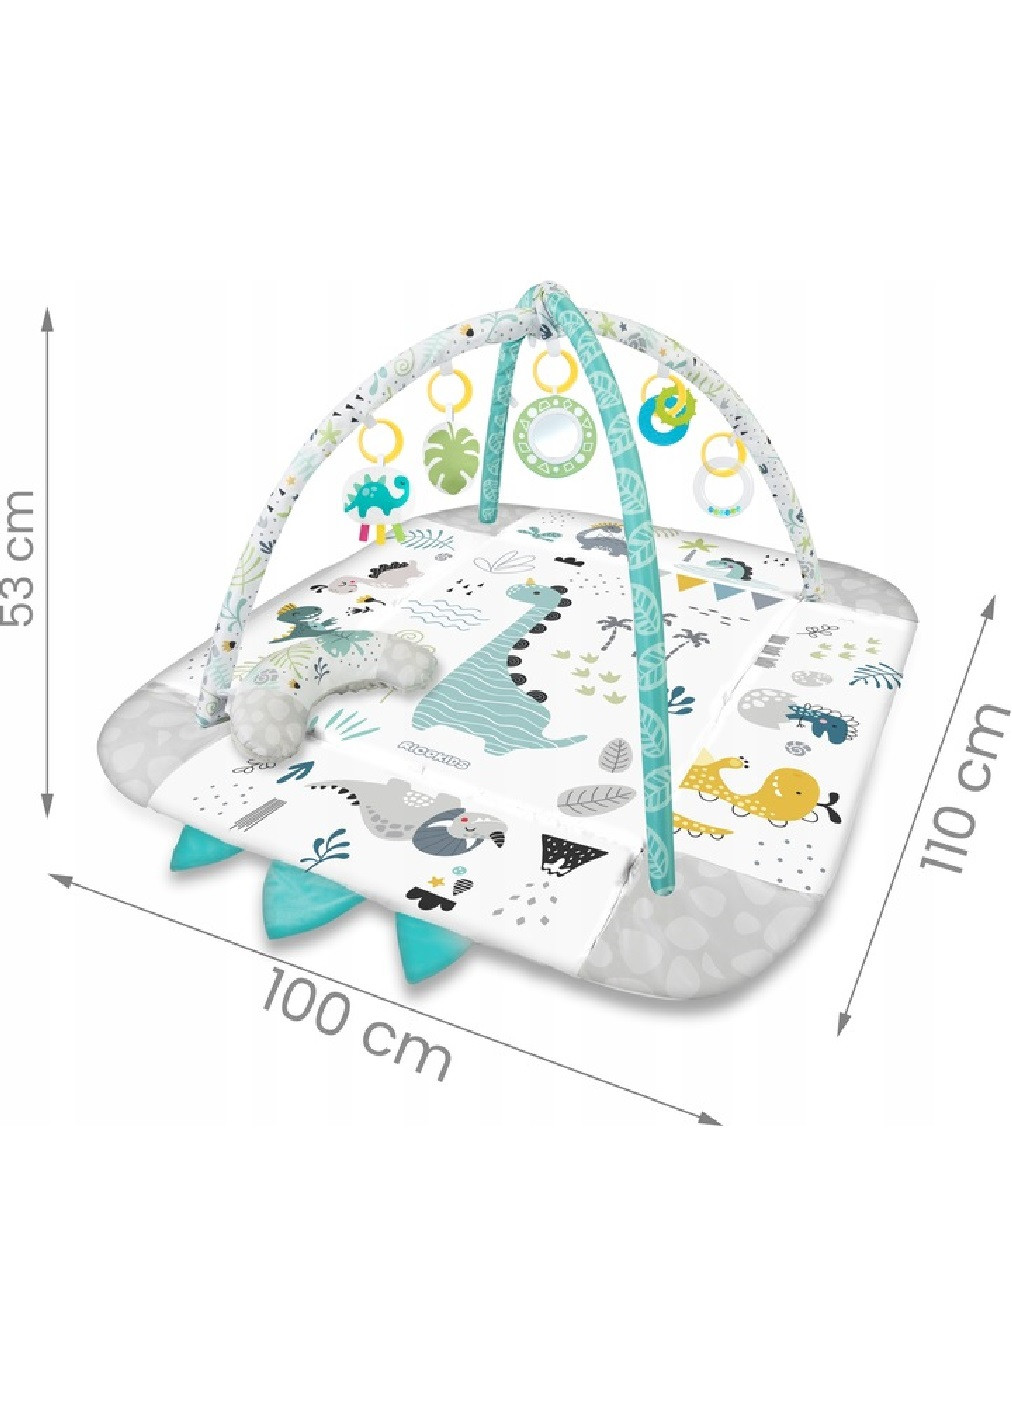 Большой развивающий интерактивный коврик комплекс для детей младенцев малышей 53х110х100 см (475236-Prob) Динозаврик Unbranded (263588354)